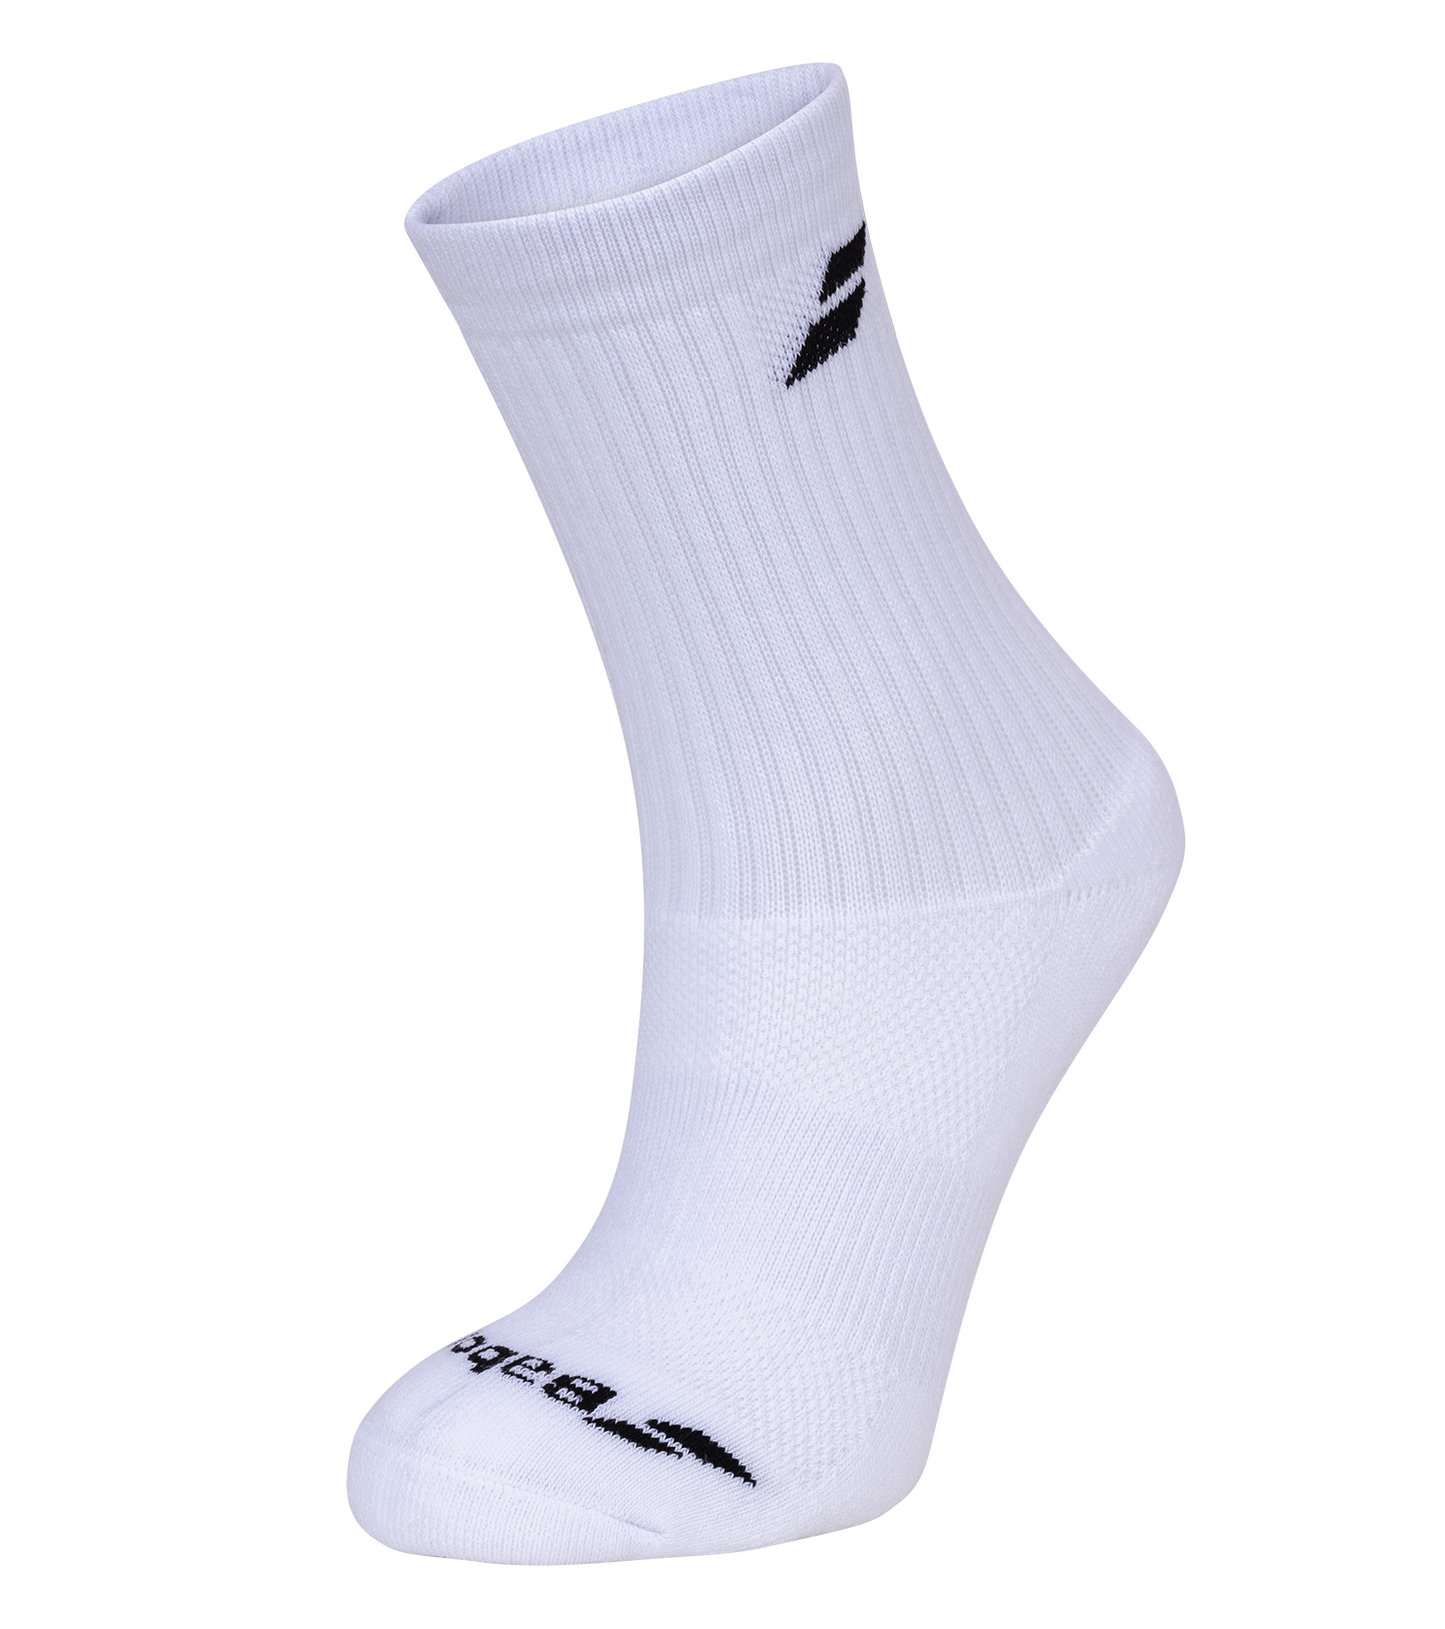 Babolat Long Badminton Socks - White 3 Pack